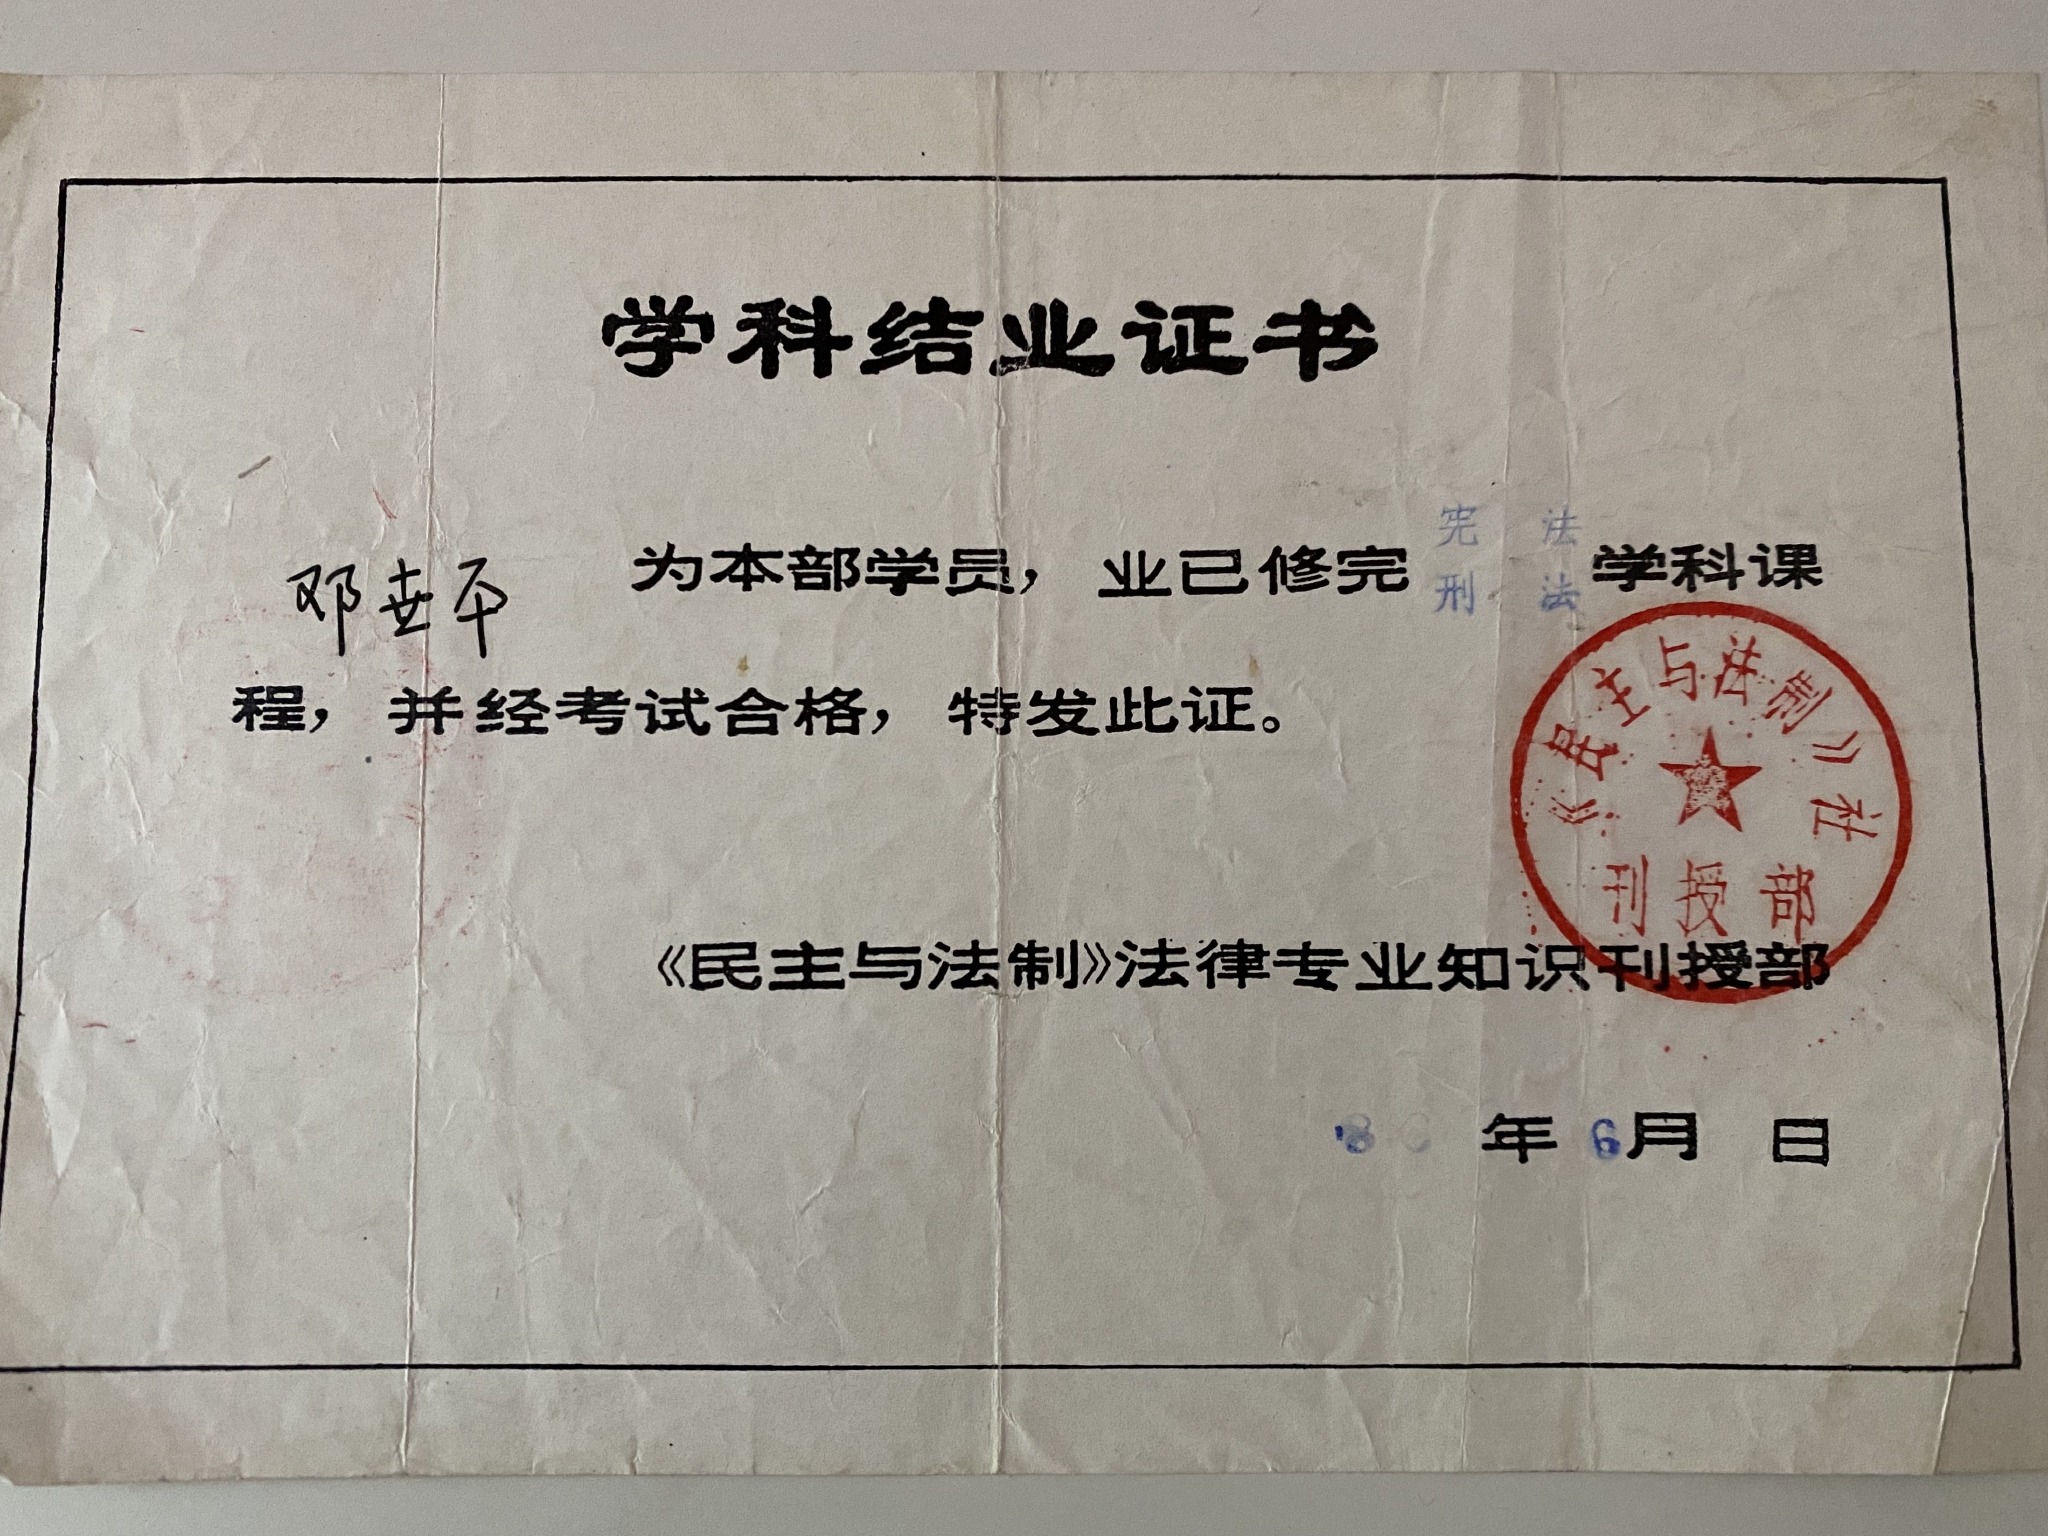 邓世平获得的法律专业知识刊授结业证书
。受访者供图